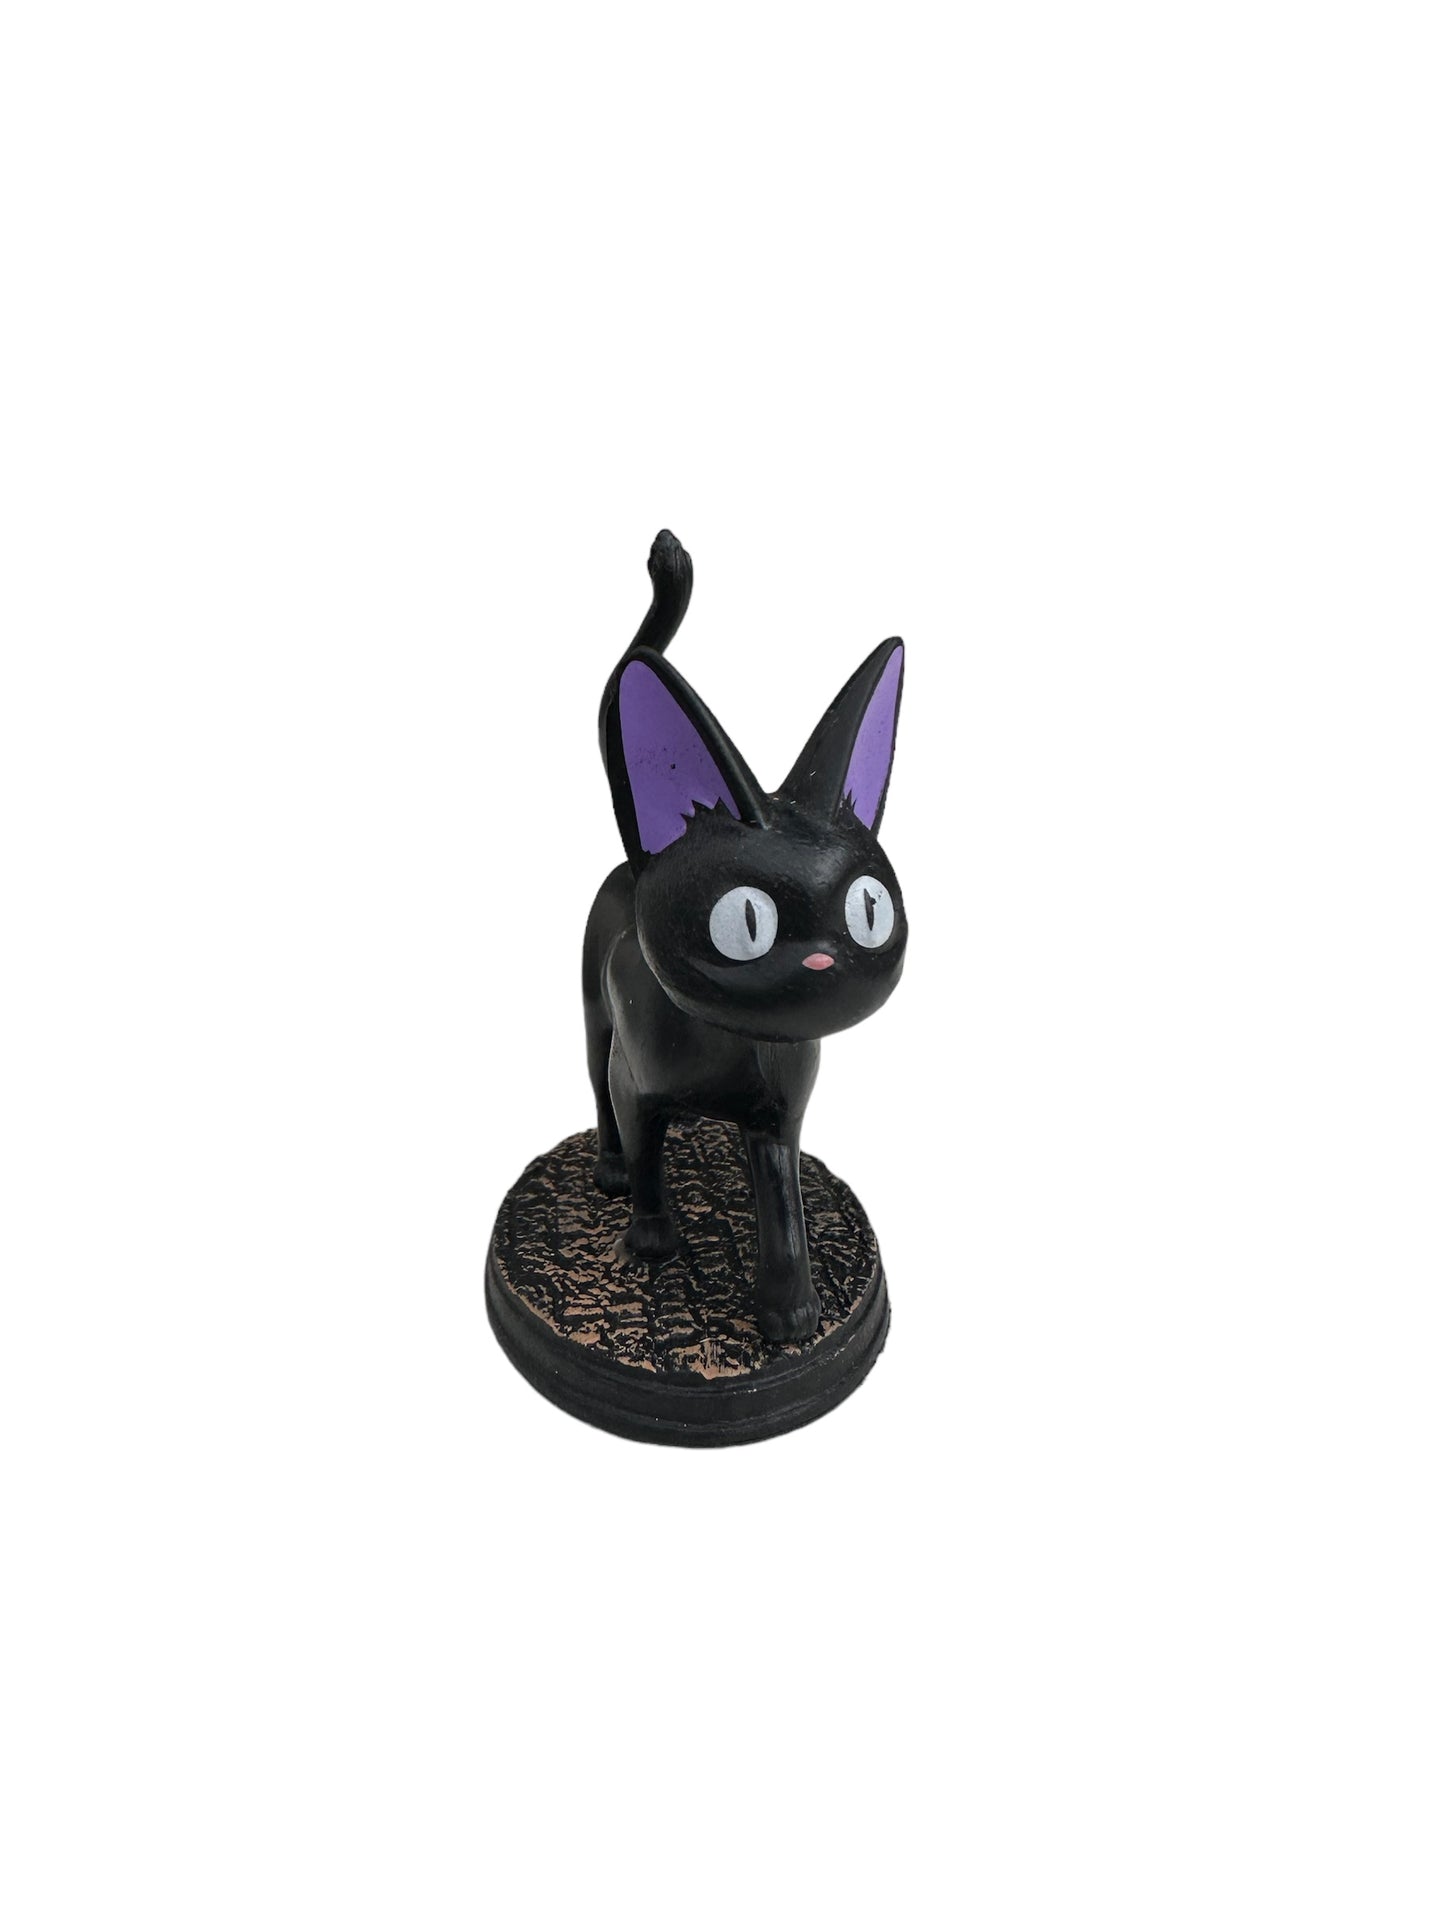 Black cat miniature doll